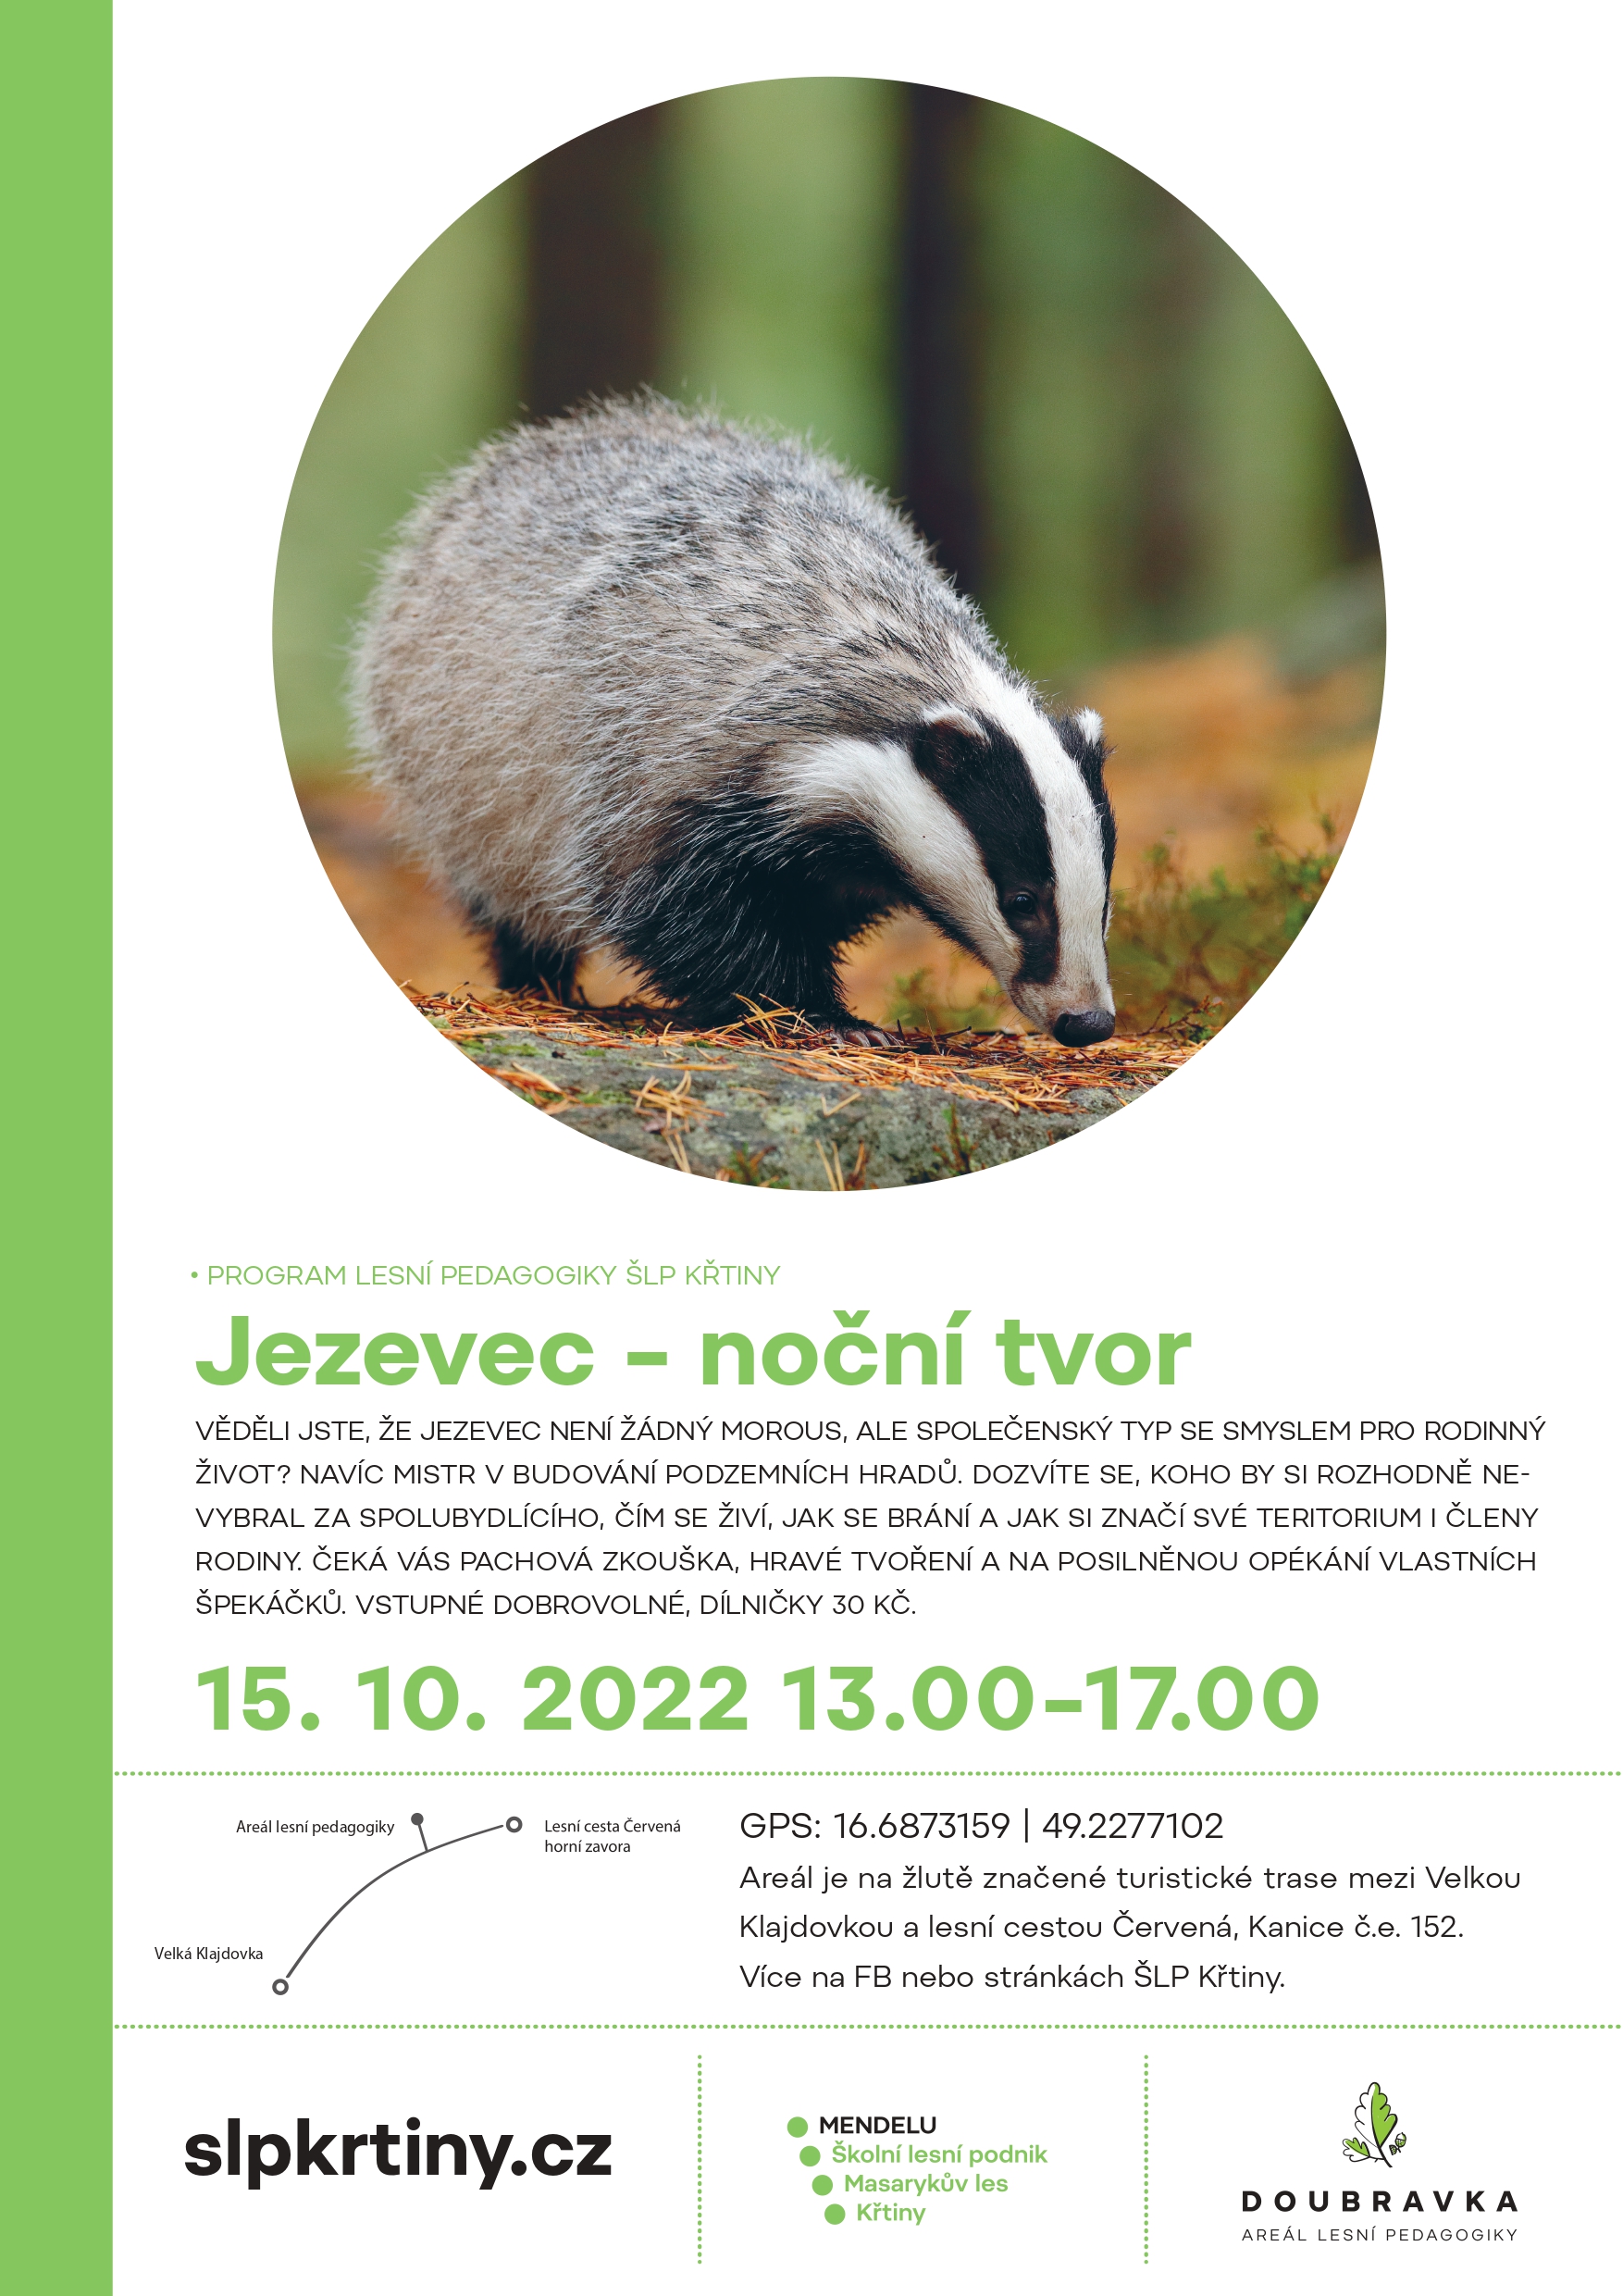 15. 10. 2022 Program lesní pedagogiky na Doubravce - Jezevec